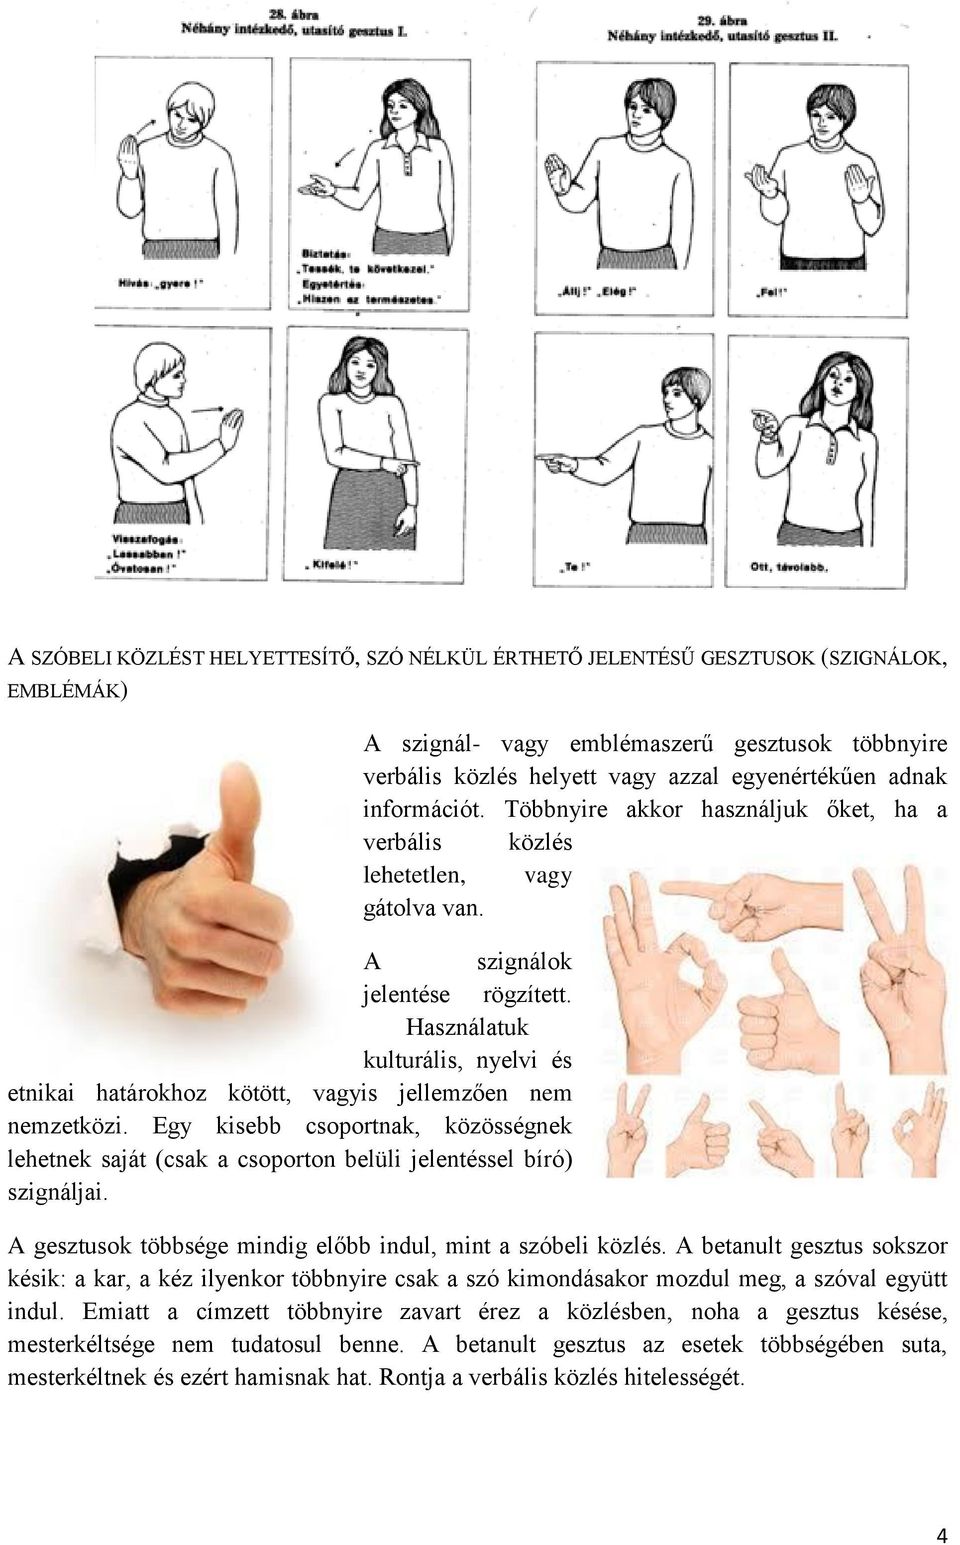 A szignál- vagy emblémaszerű gesztusok többnyire verbális közlés helyett vagy azzal egyenértékűen adnak információt. Többnyire akkor használjuk őket, ha a verbális közlés lehetetlen, vagy gátolva van.